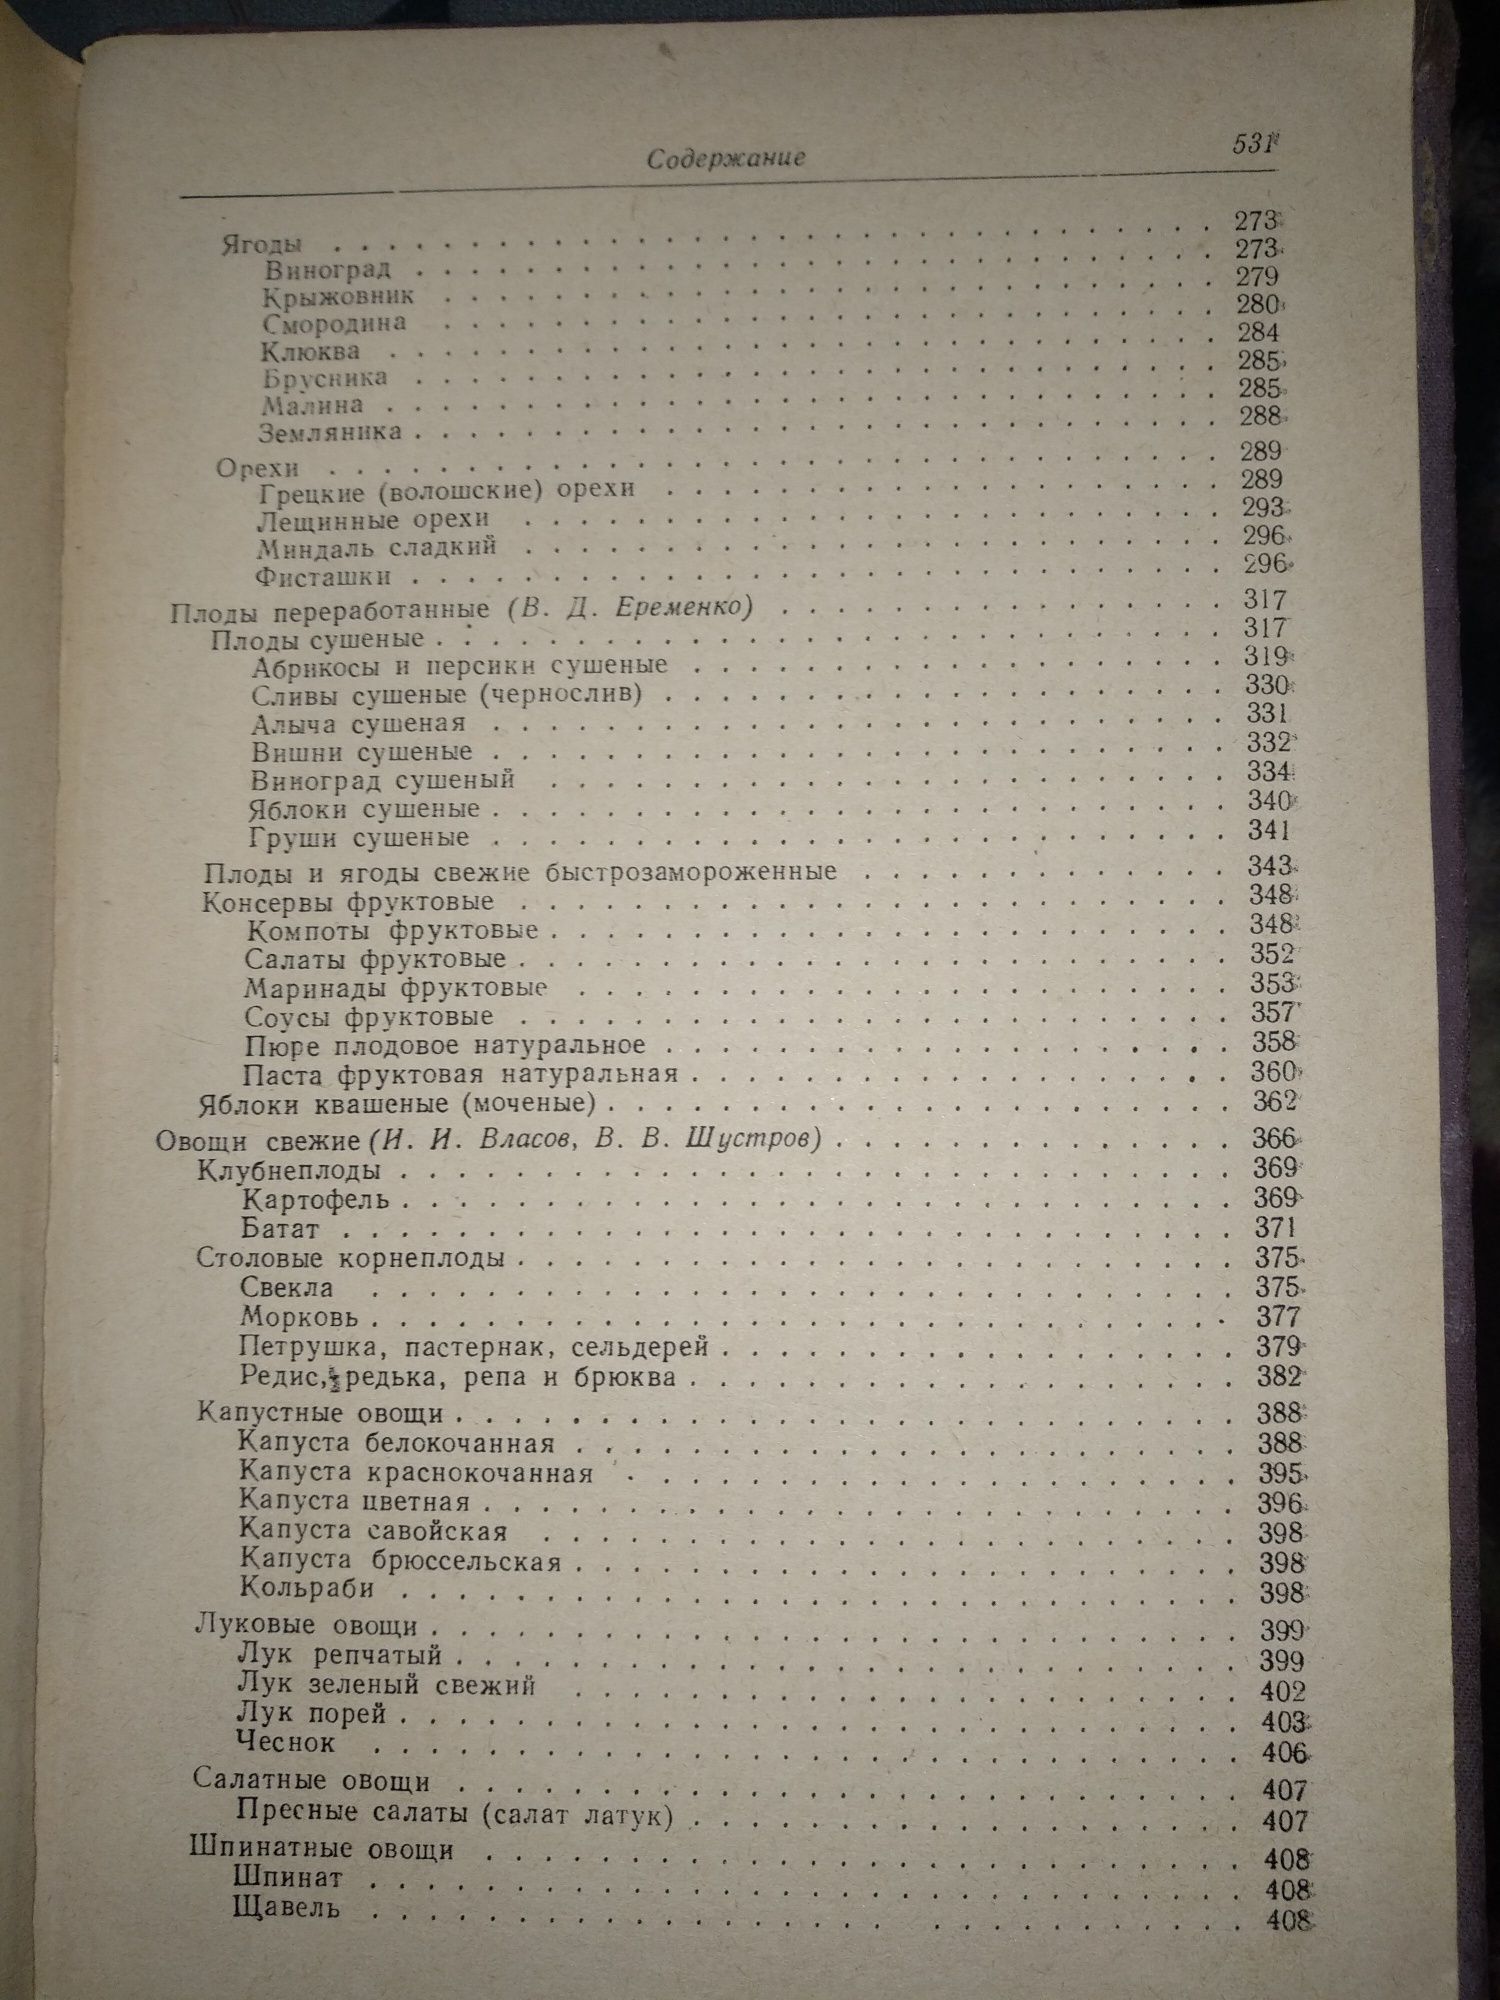 Справочник товароведа продовольственных товаров 1955 г. Часть 1